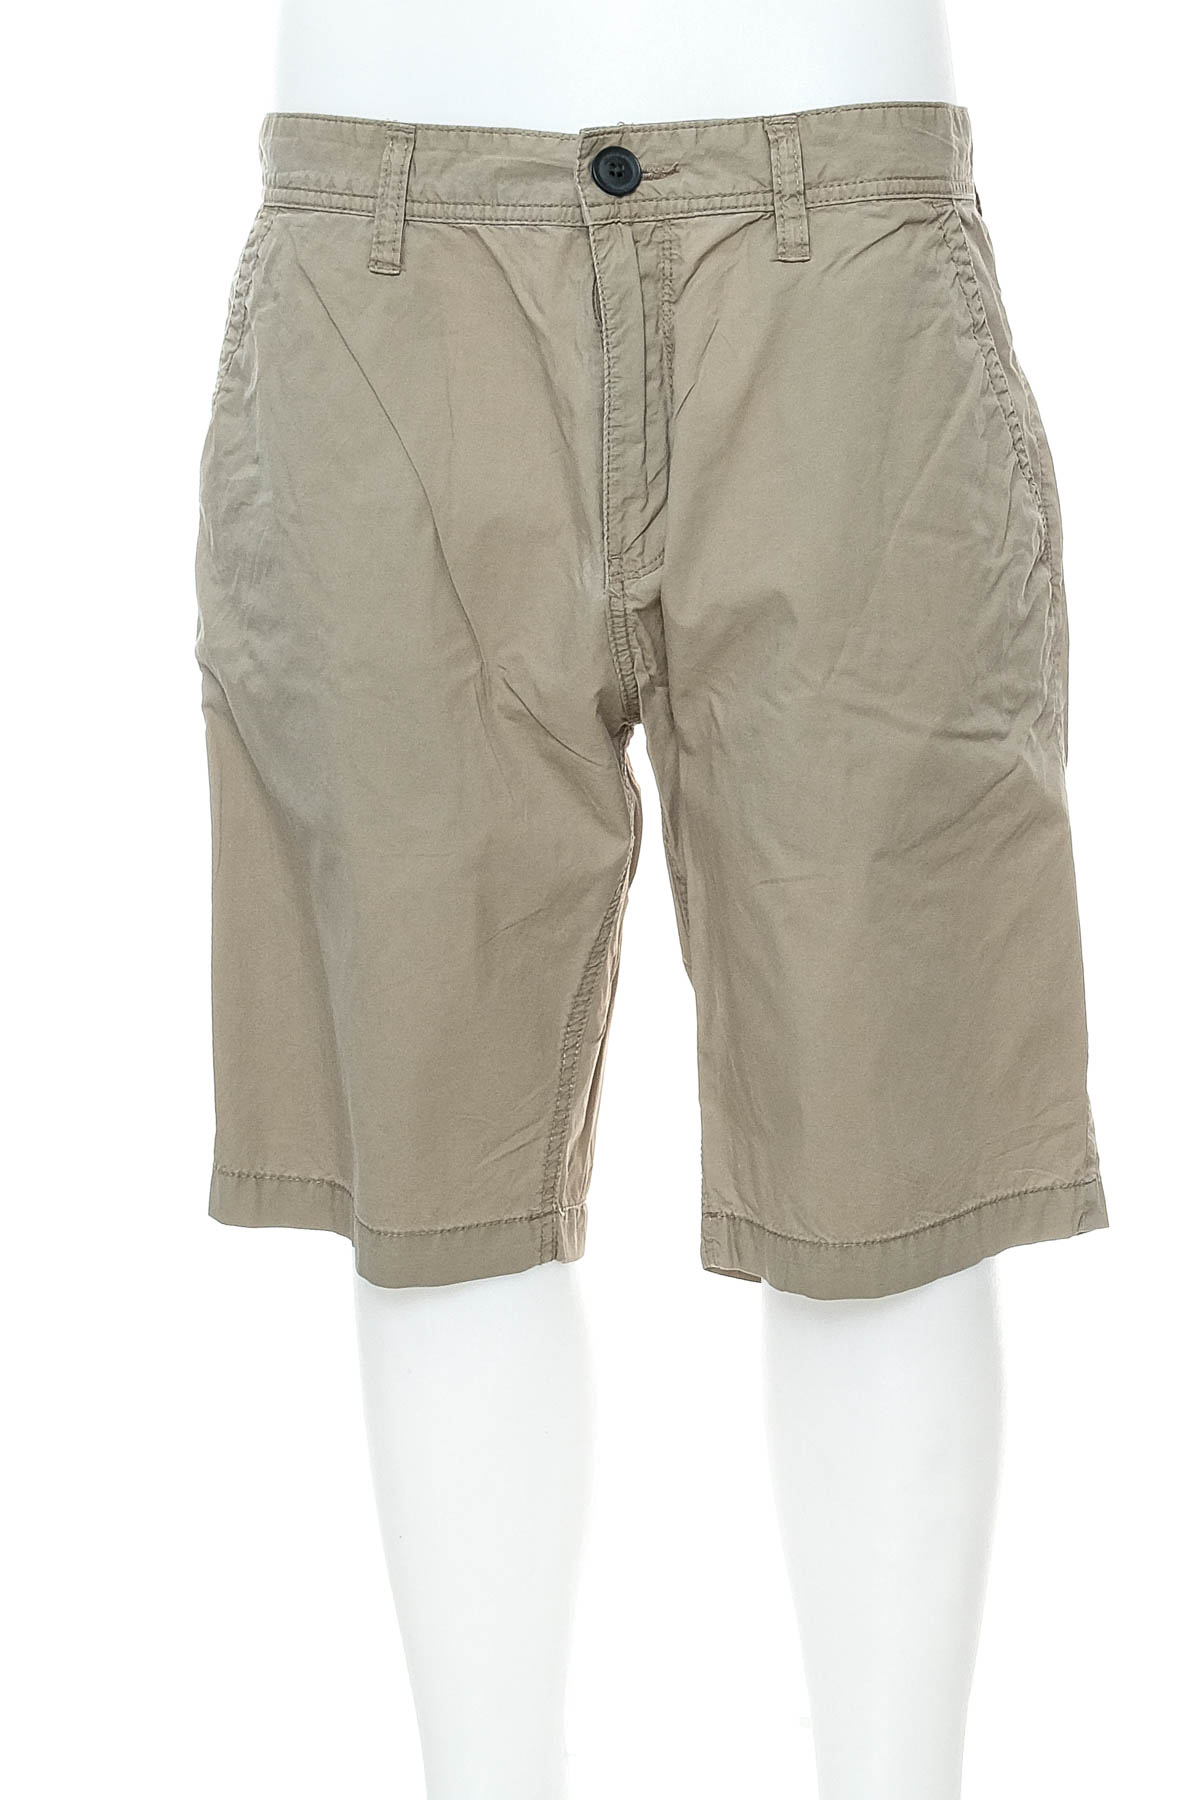 Men's shorts - S.Oliver - 0